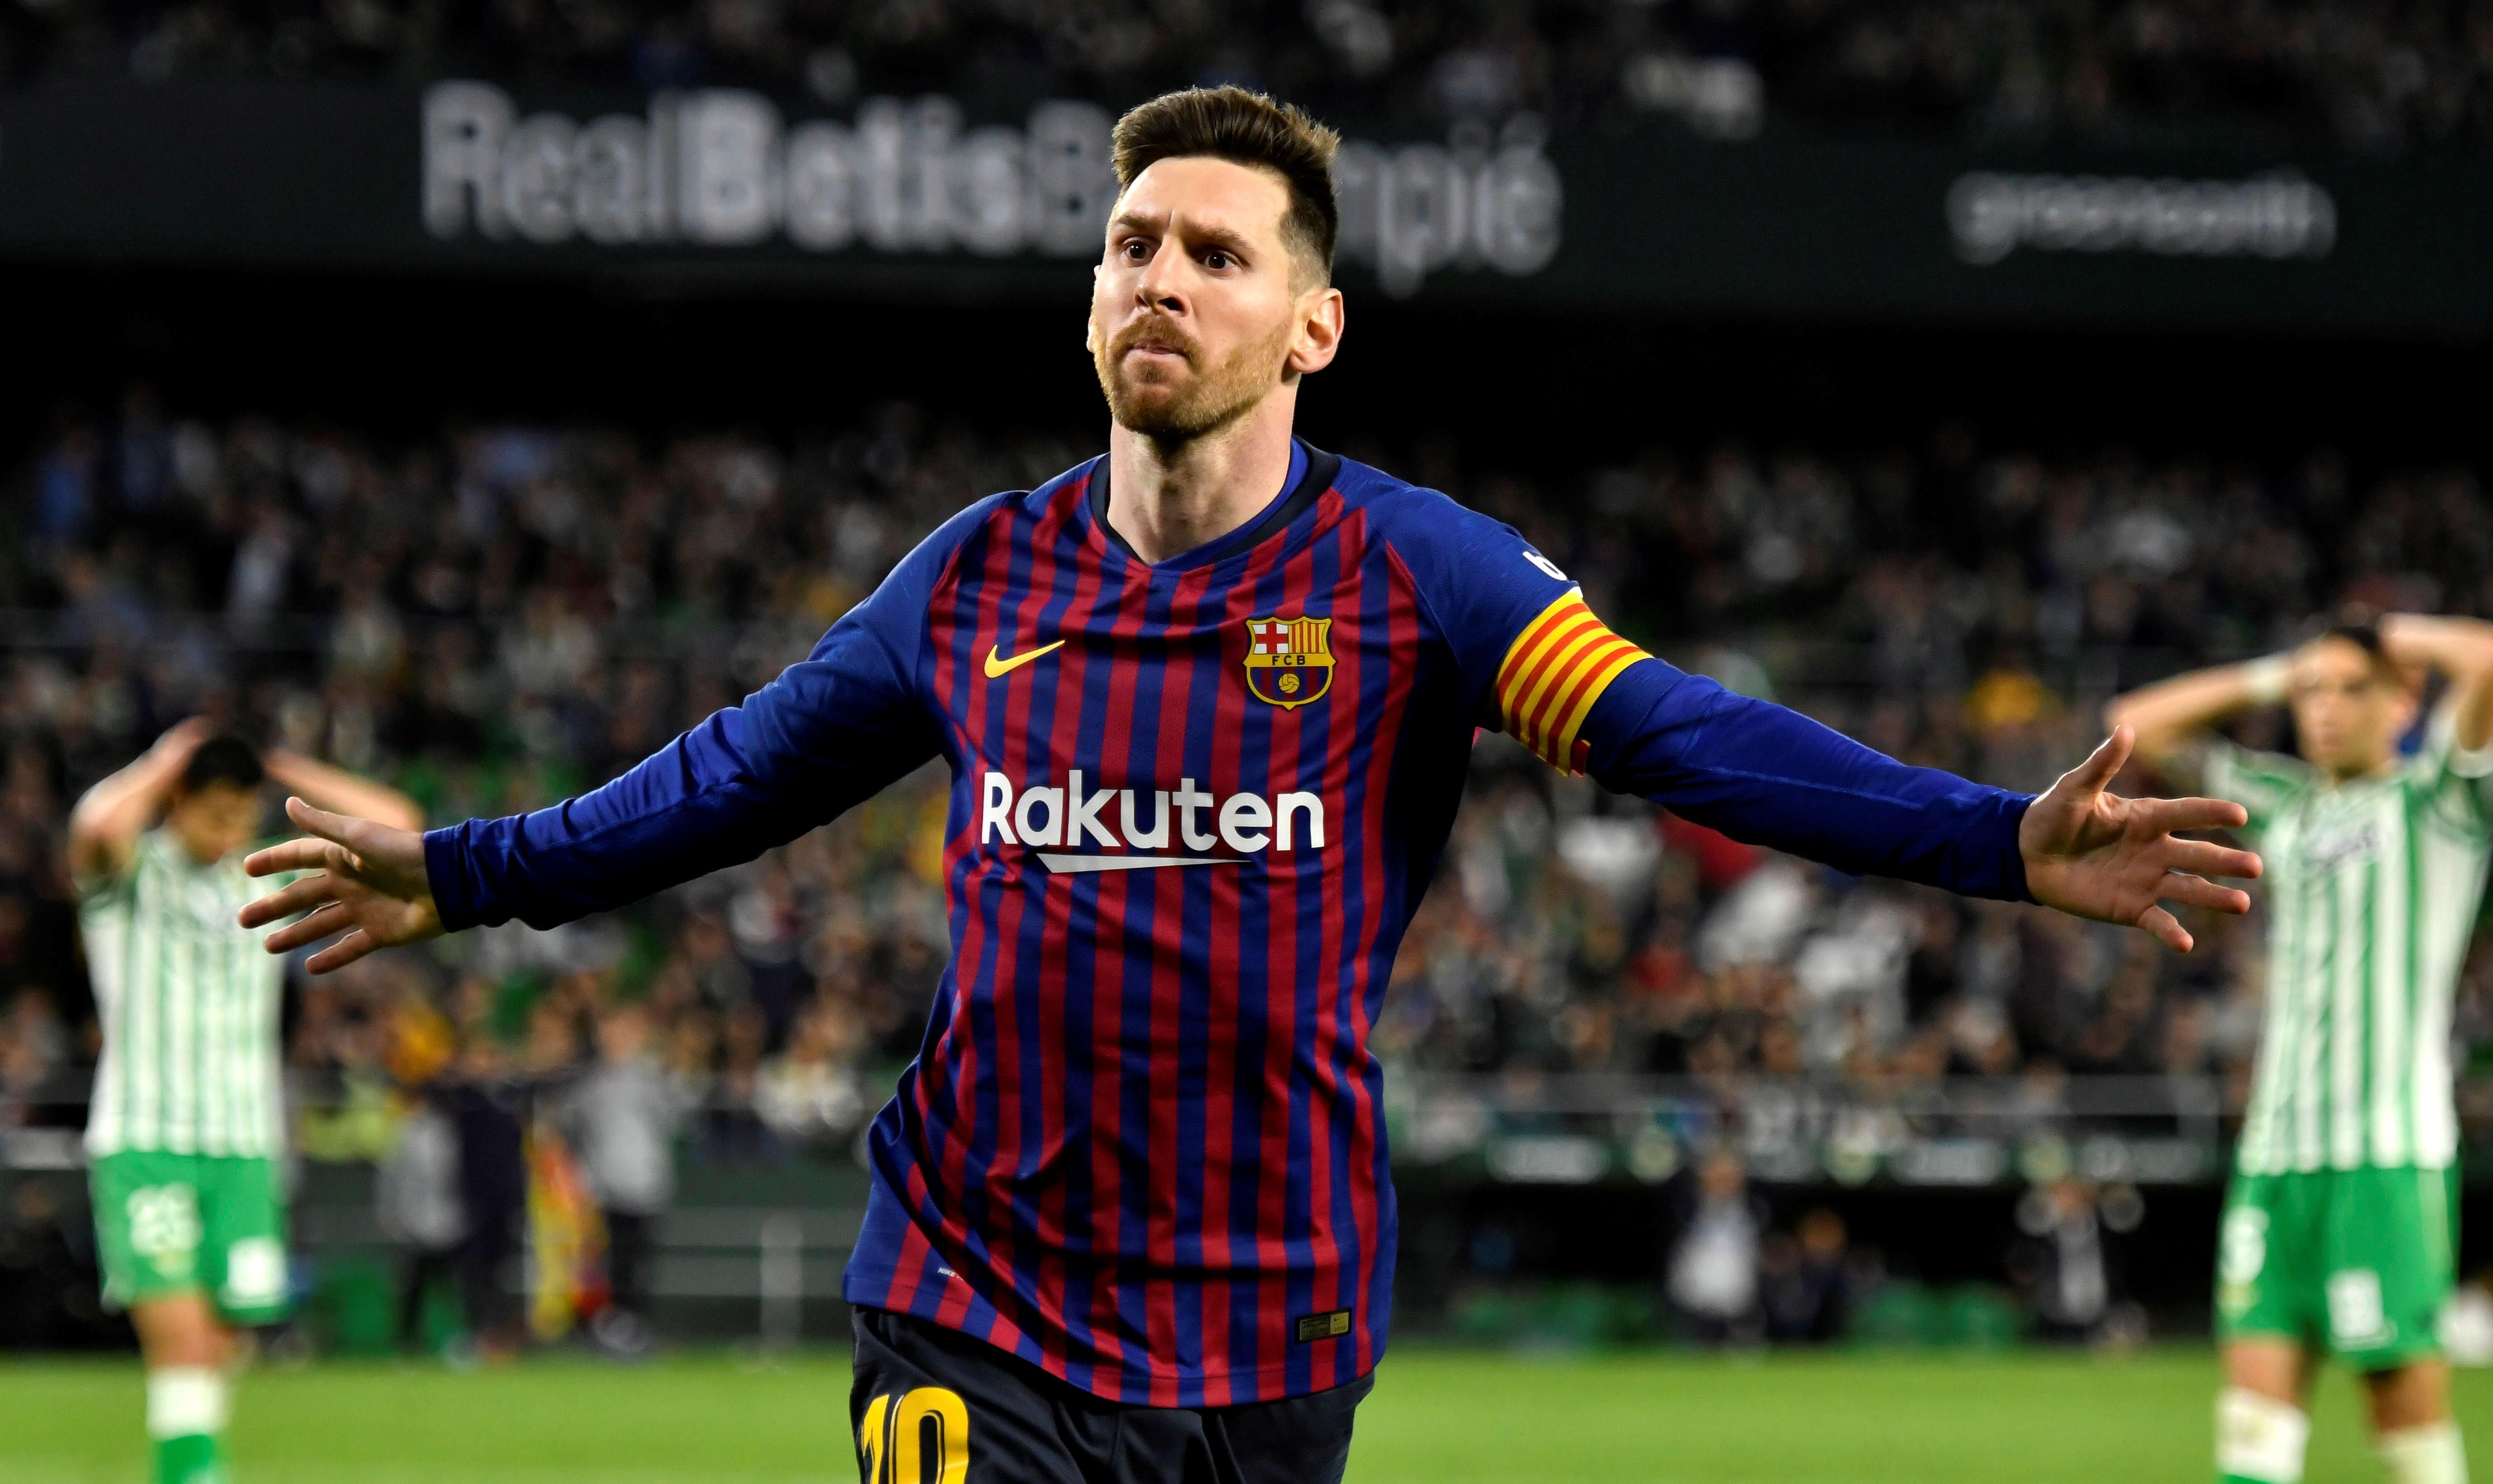 Un expresident de l'Espanyol insulta els aficionats del Betis per ovacionar Messi